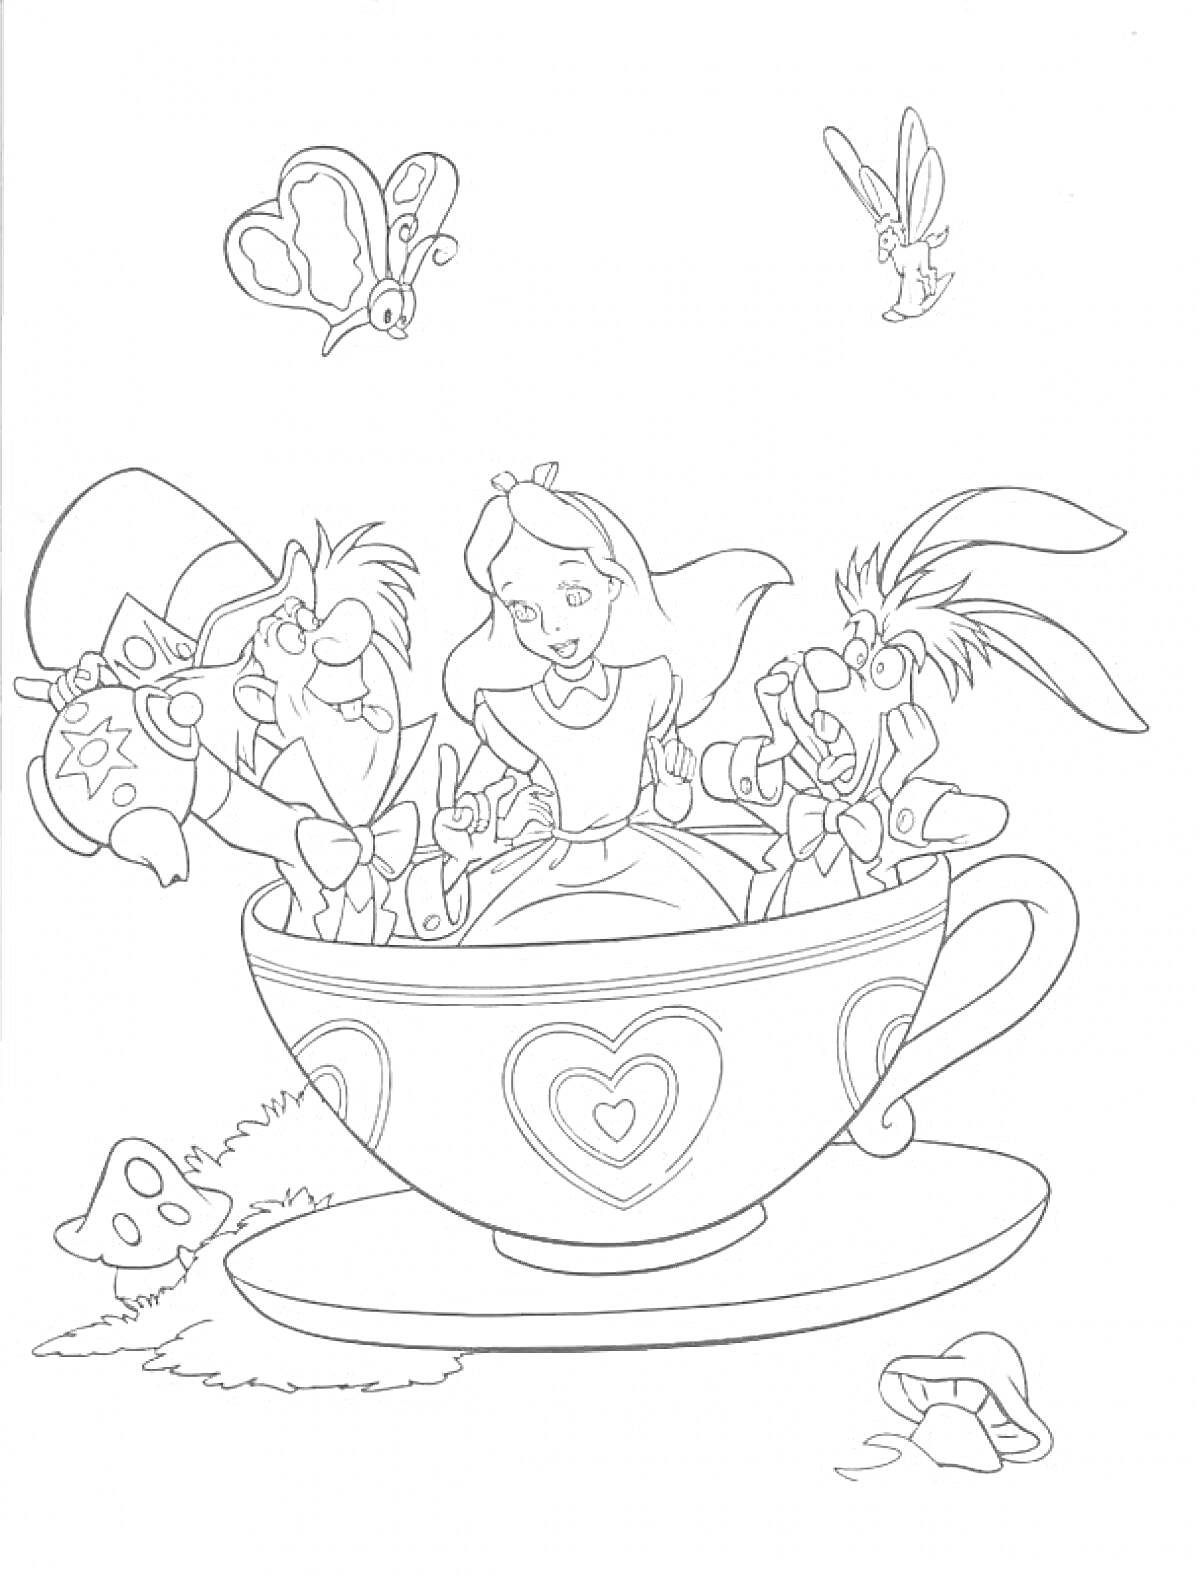 Раскраска Алиса, Шляпник и Мартовский Заяц в чашке, бабочка, и кролик